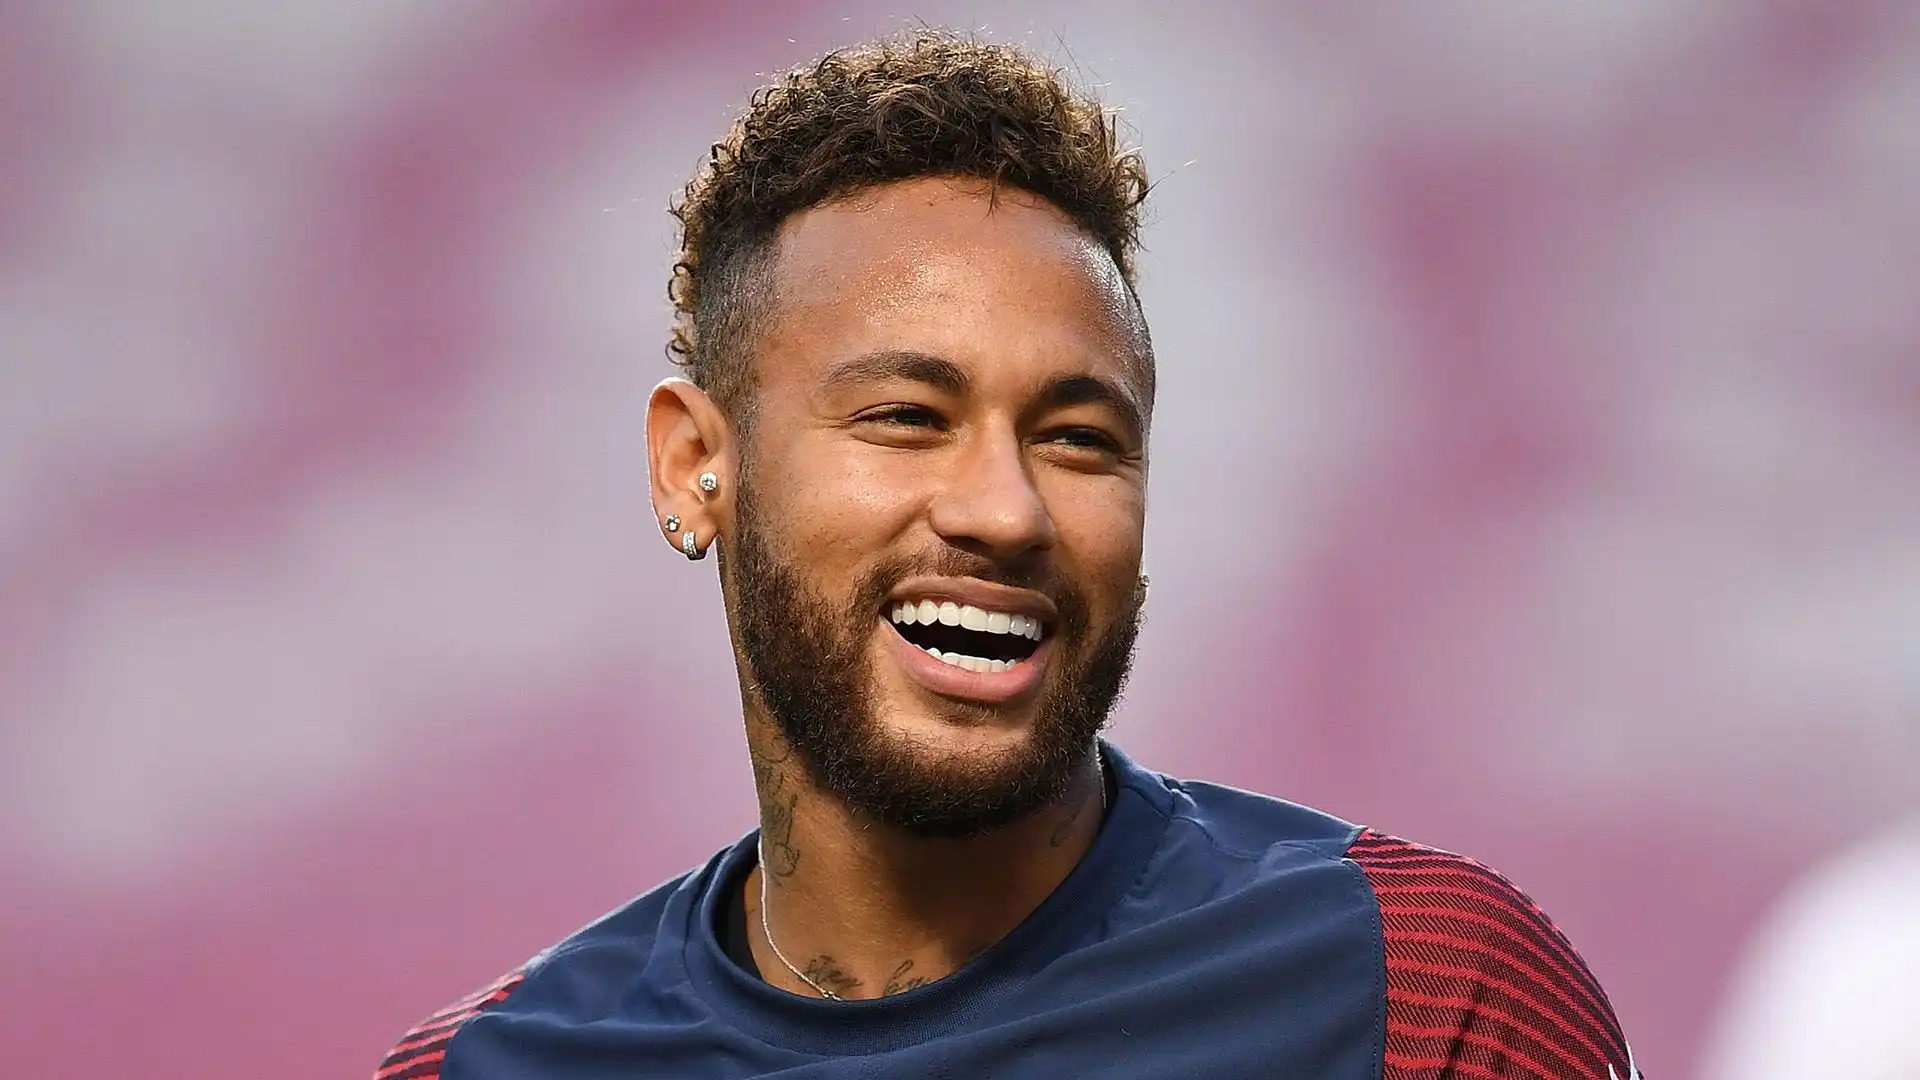 3- In quante squadre ha giocato Neymar da professionista?
A- 3
B- 4
C- 2